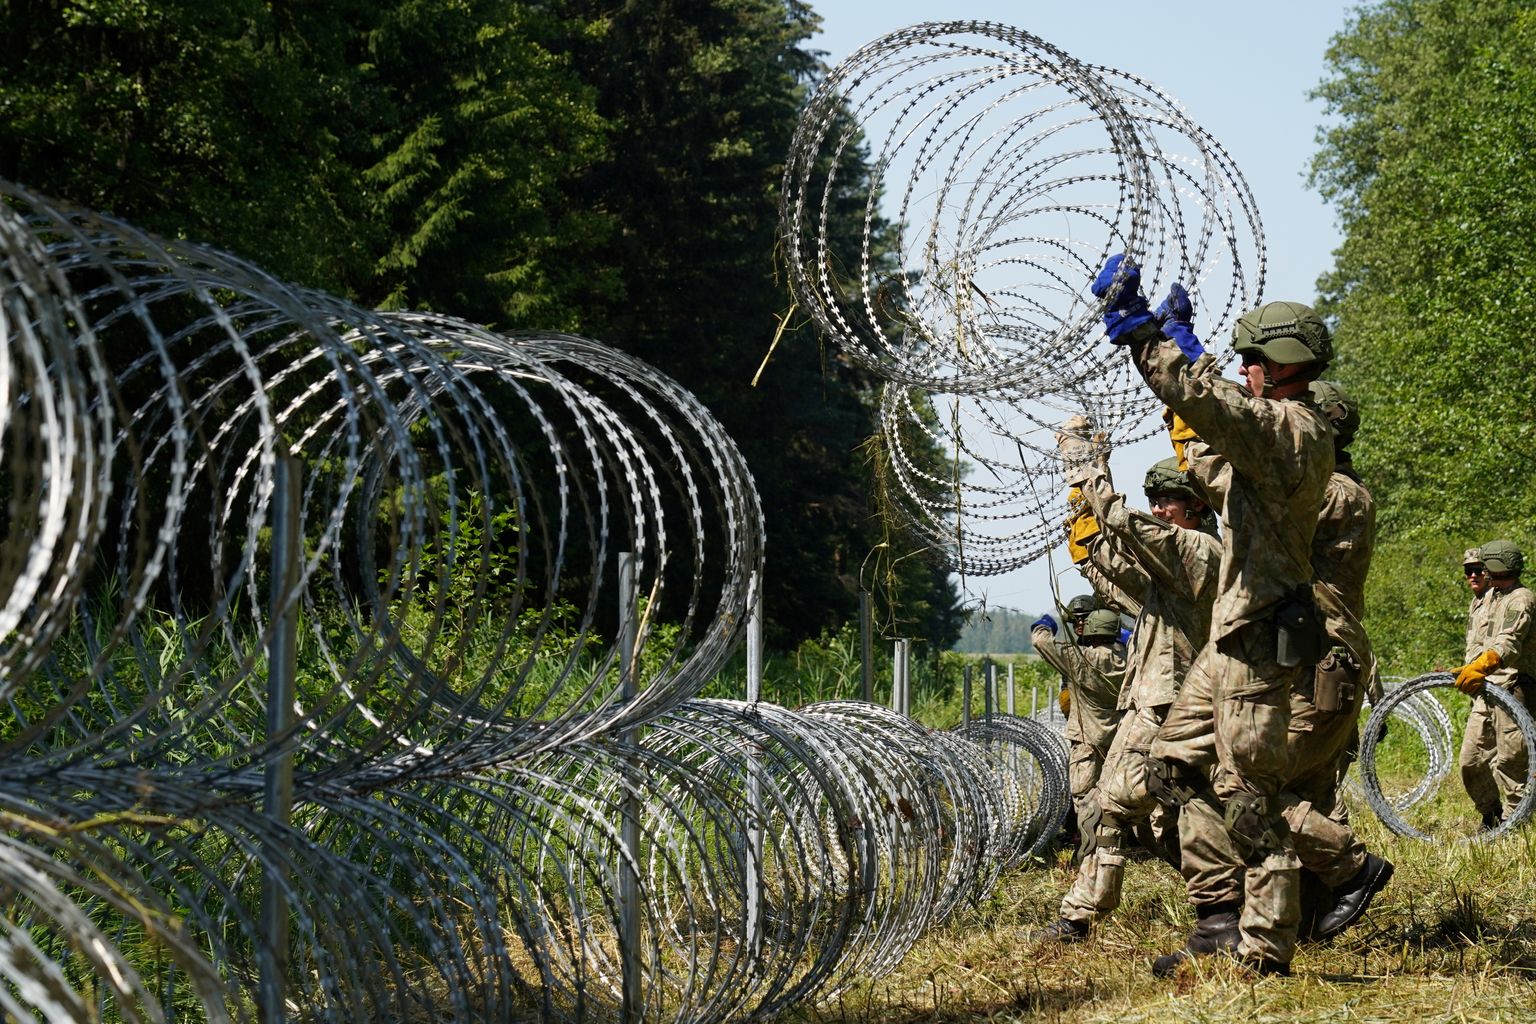 Leedu sõdurid on ametis piiritara püstitamisega.